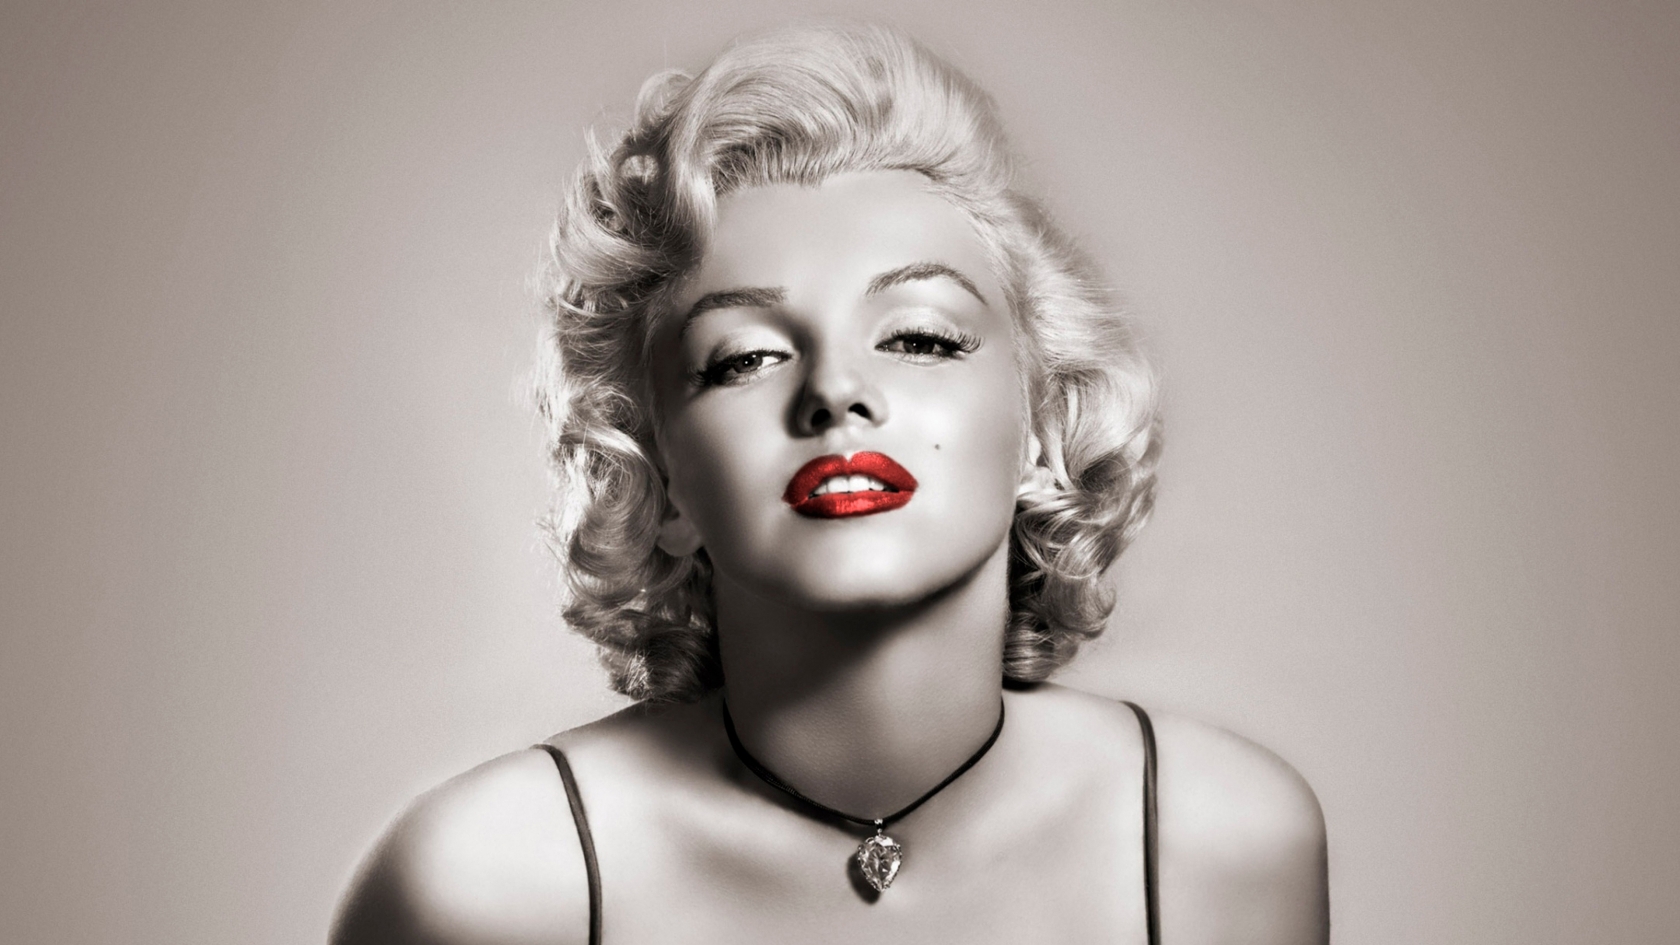 Marilyn Monroe Red Lips for 1680 x 945 HDTV resolution